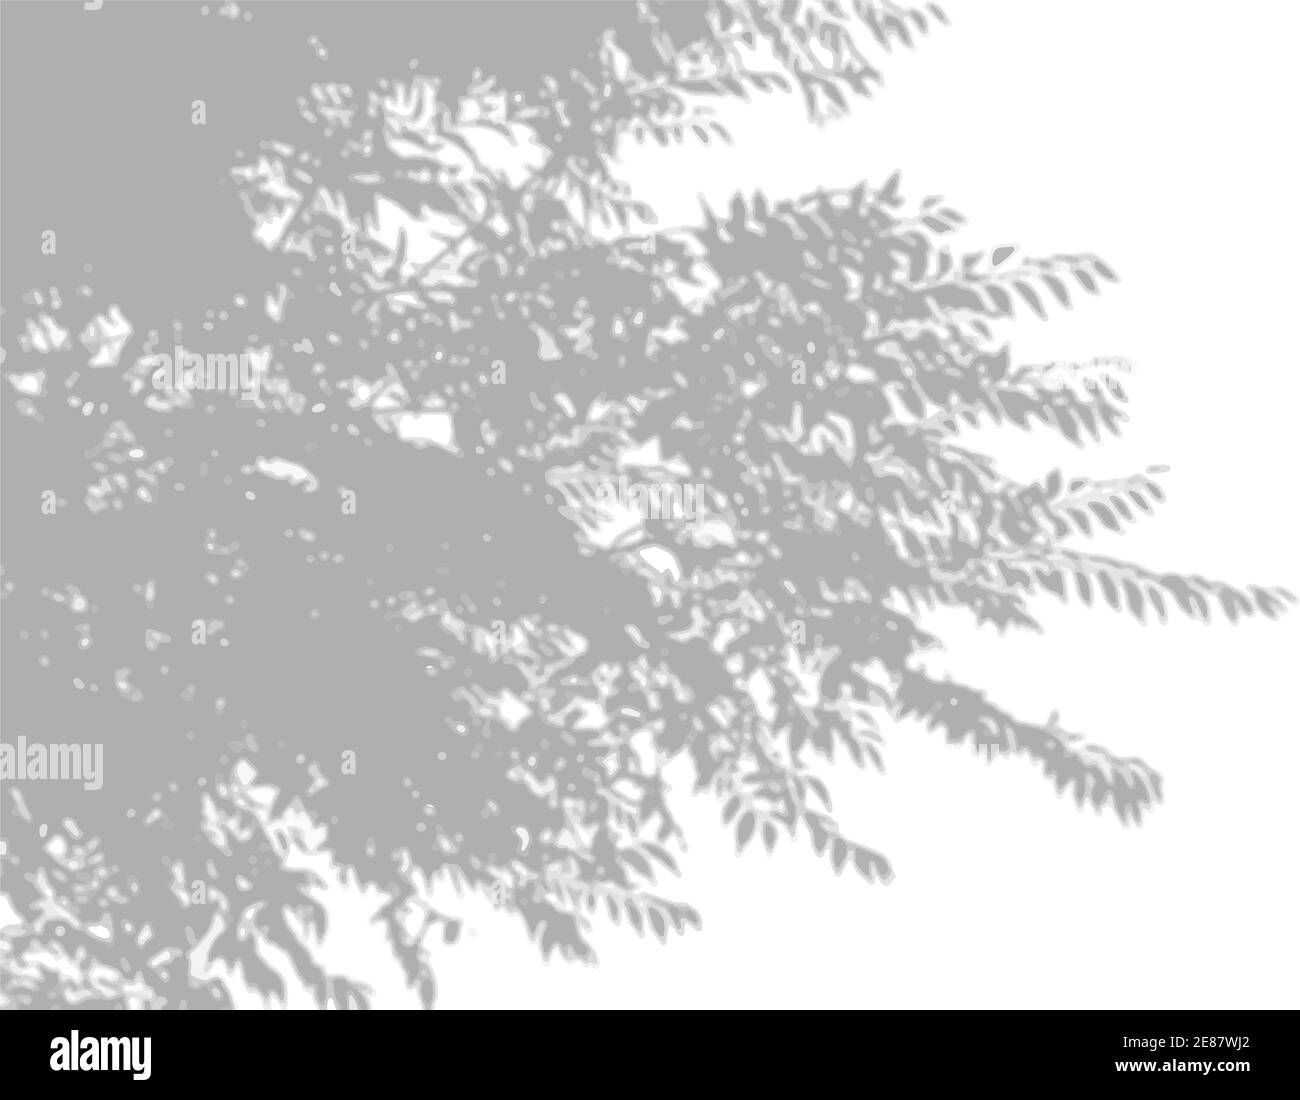 La lumière naturelle projette des ombres à partir d'une branche de saule sur un fond blanc isolé. Effet de superposition des ombres Illustration de Vecteur